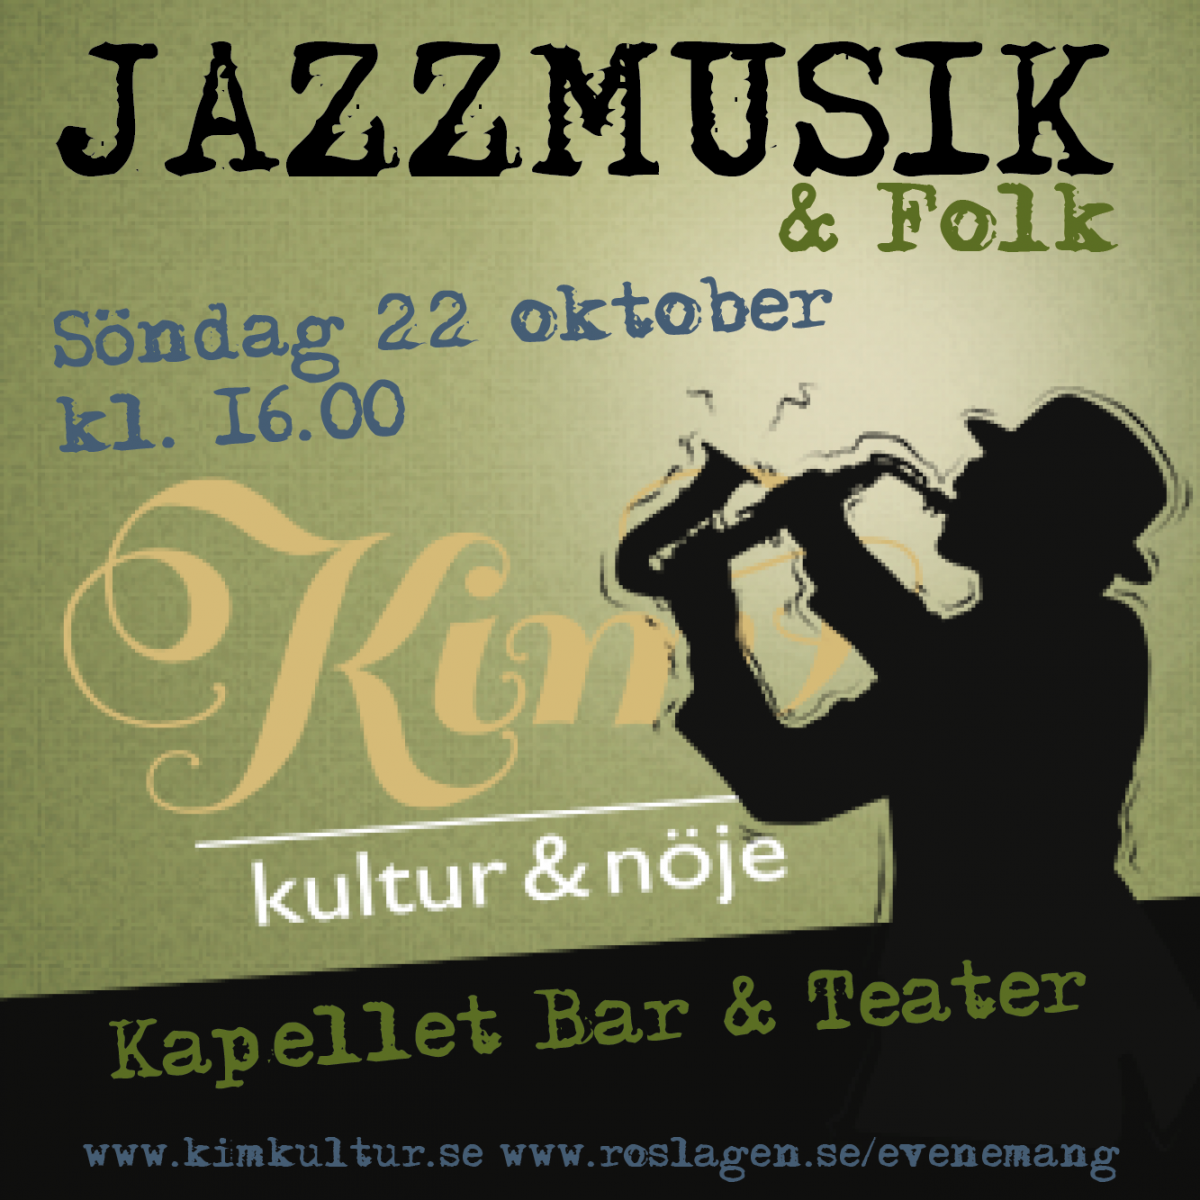 Jazzmusik & Folk